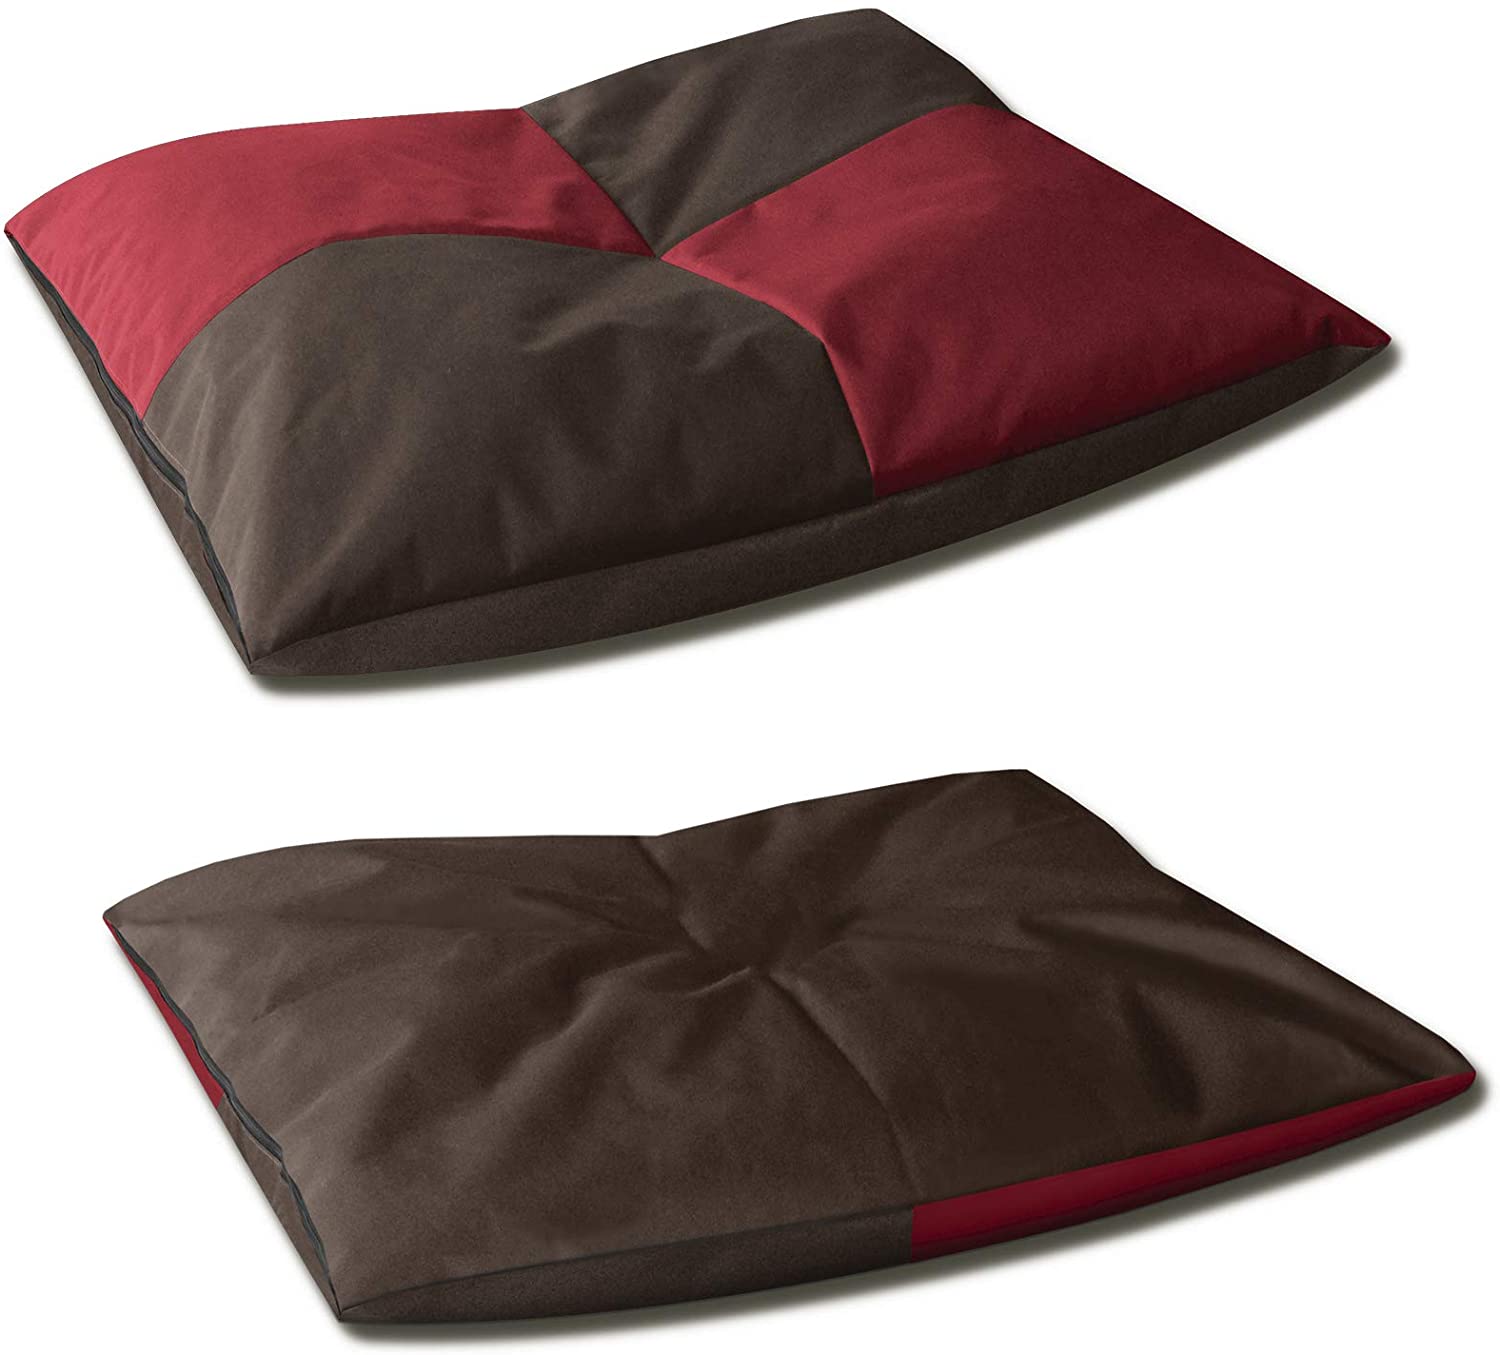  BedDog® Bona 2en1 Rojo/Negro XXL Aprox. 110x90cm colchón para Perro, 6 Colores, Cama para Perro, sofá para Perro, Cesta para Perro 